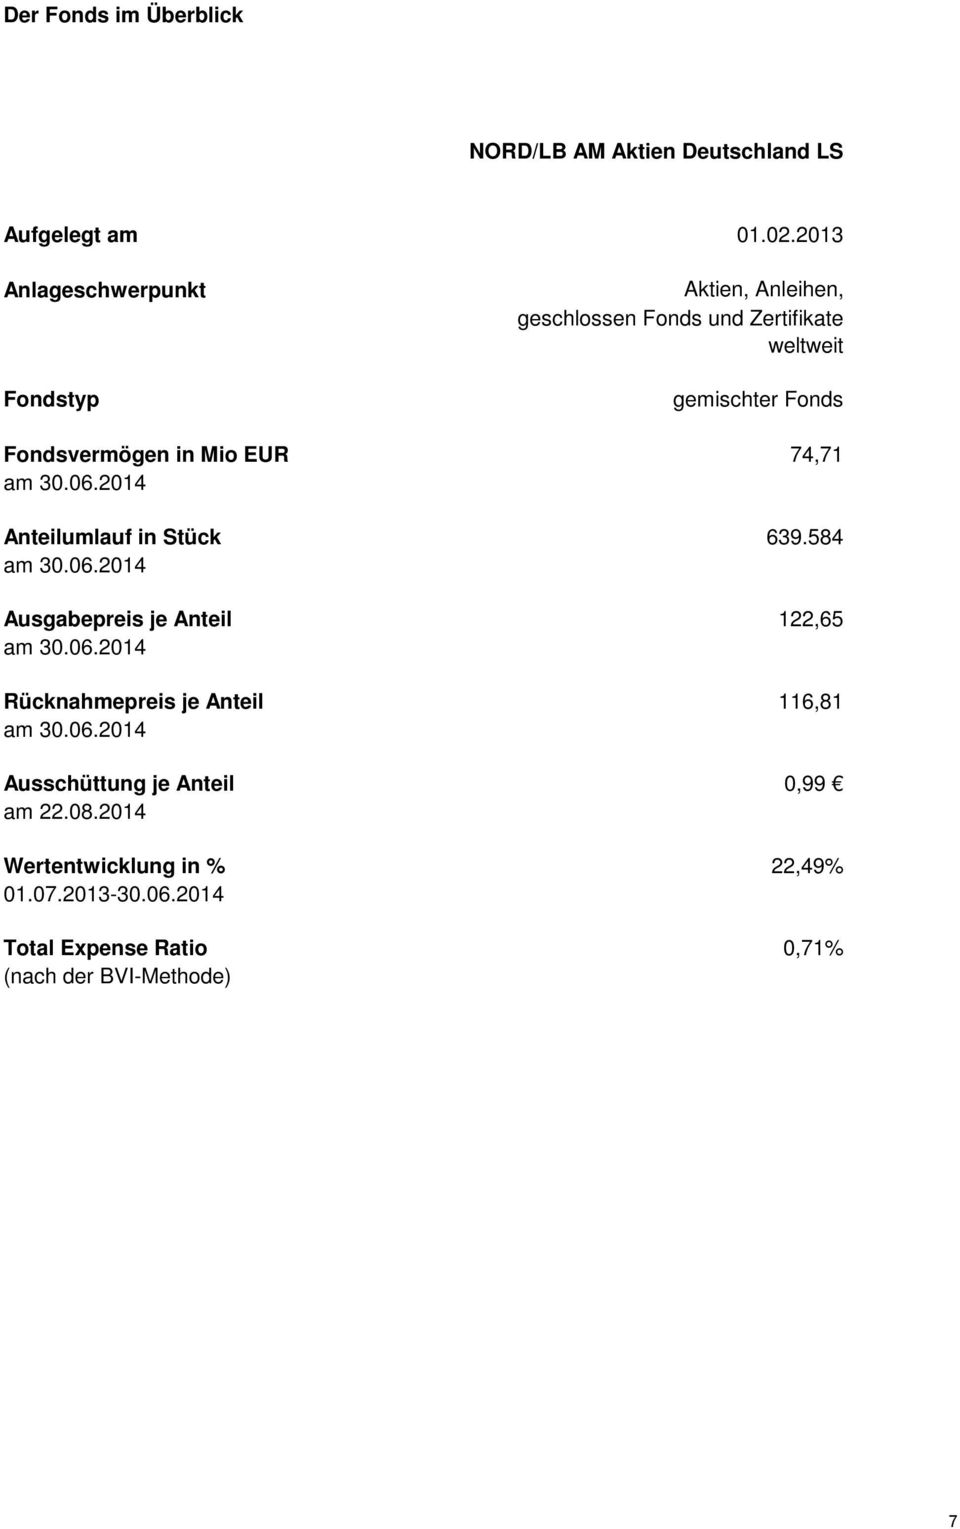 Mio EUR 74,71 am 30.06.2014 Anteilumlauf in Stück 639.584 am 30.06.2014 Ausgabepreis je Anteil 122,65 am 30.06.2014 Rücknahmepreis je Anteil 116,81 am 30.